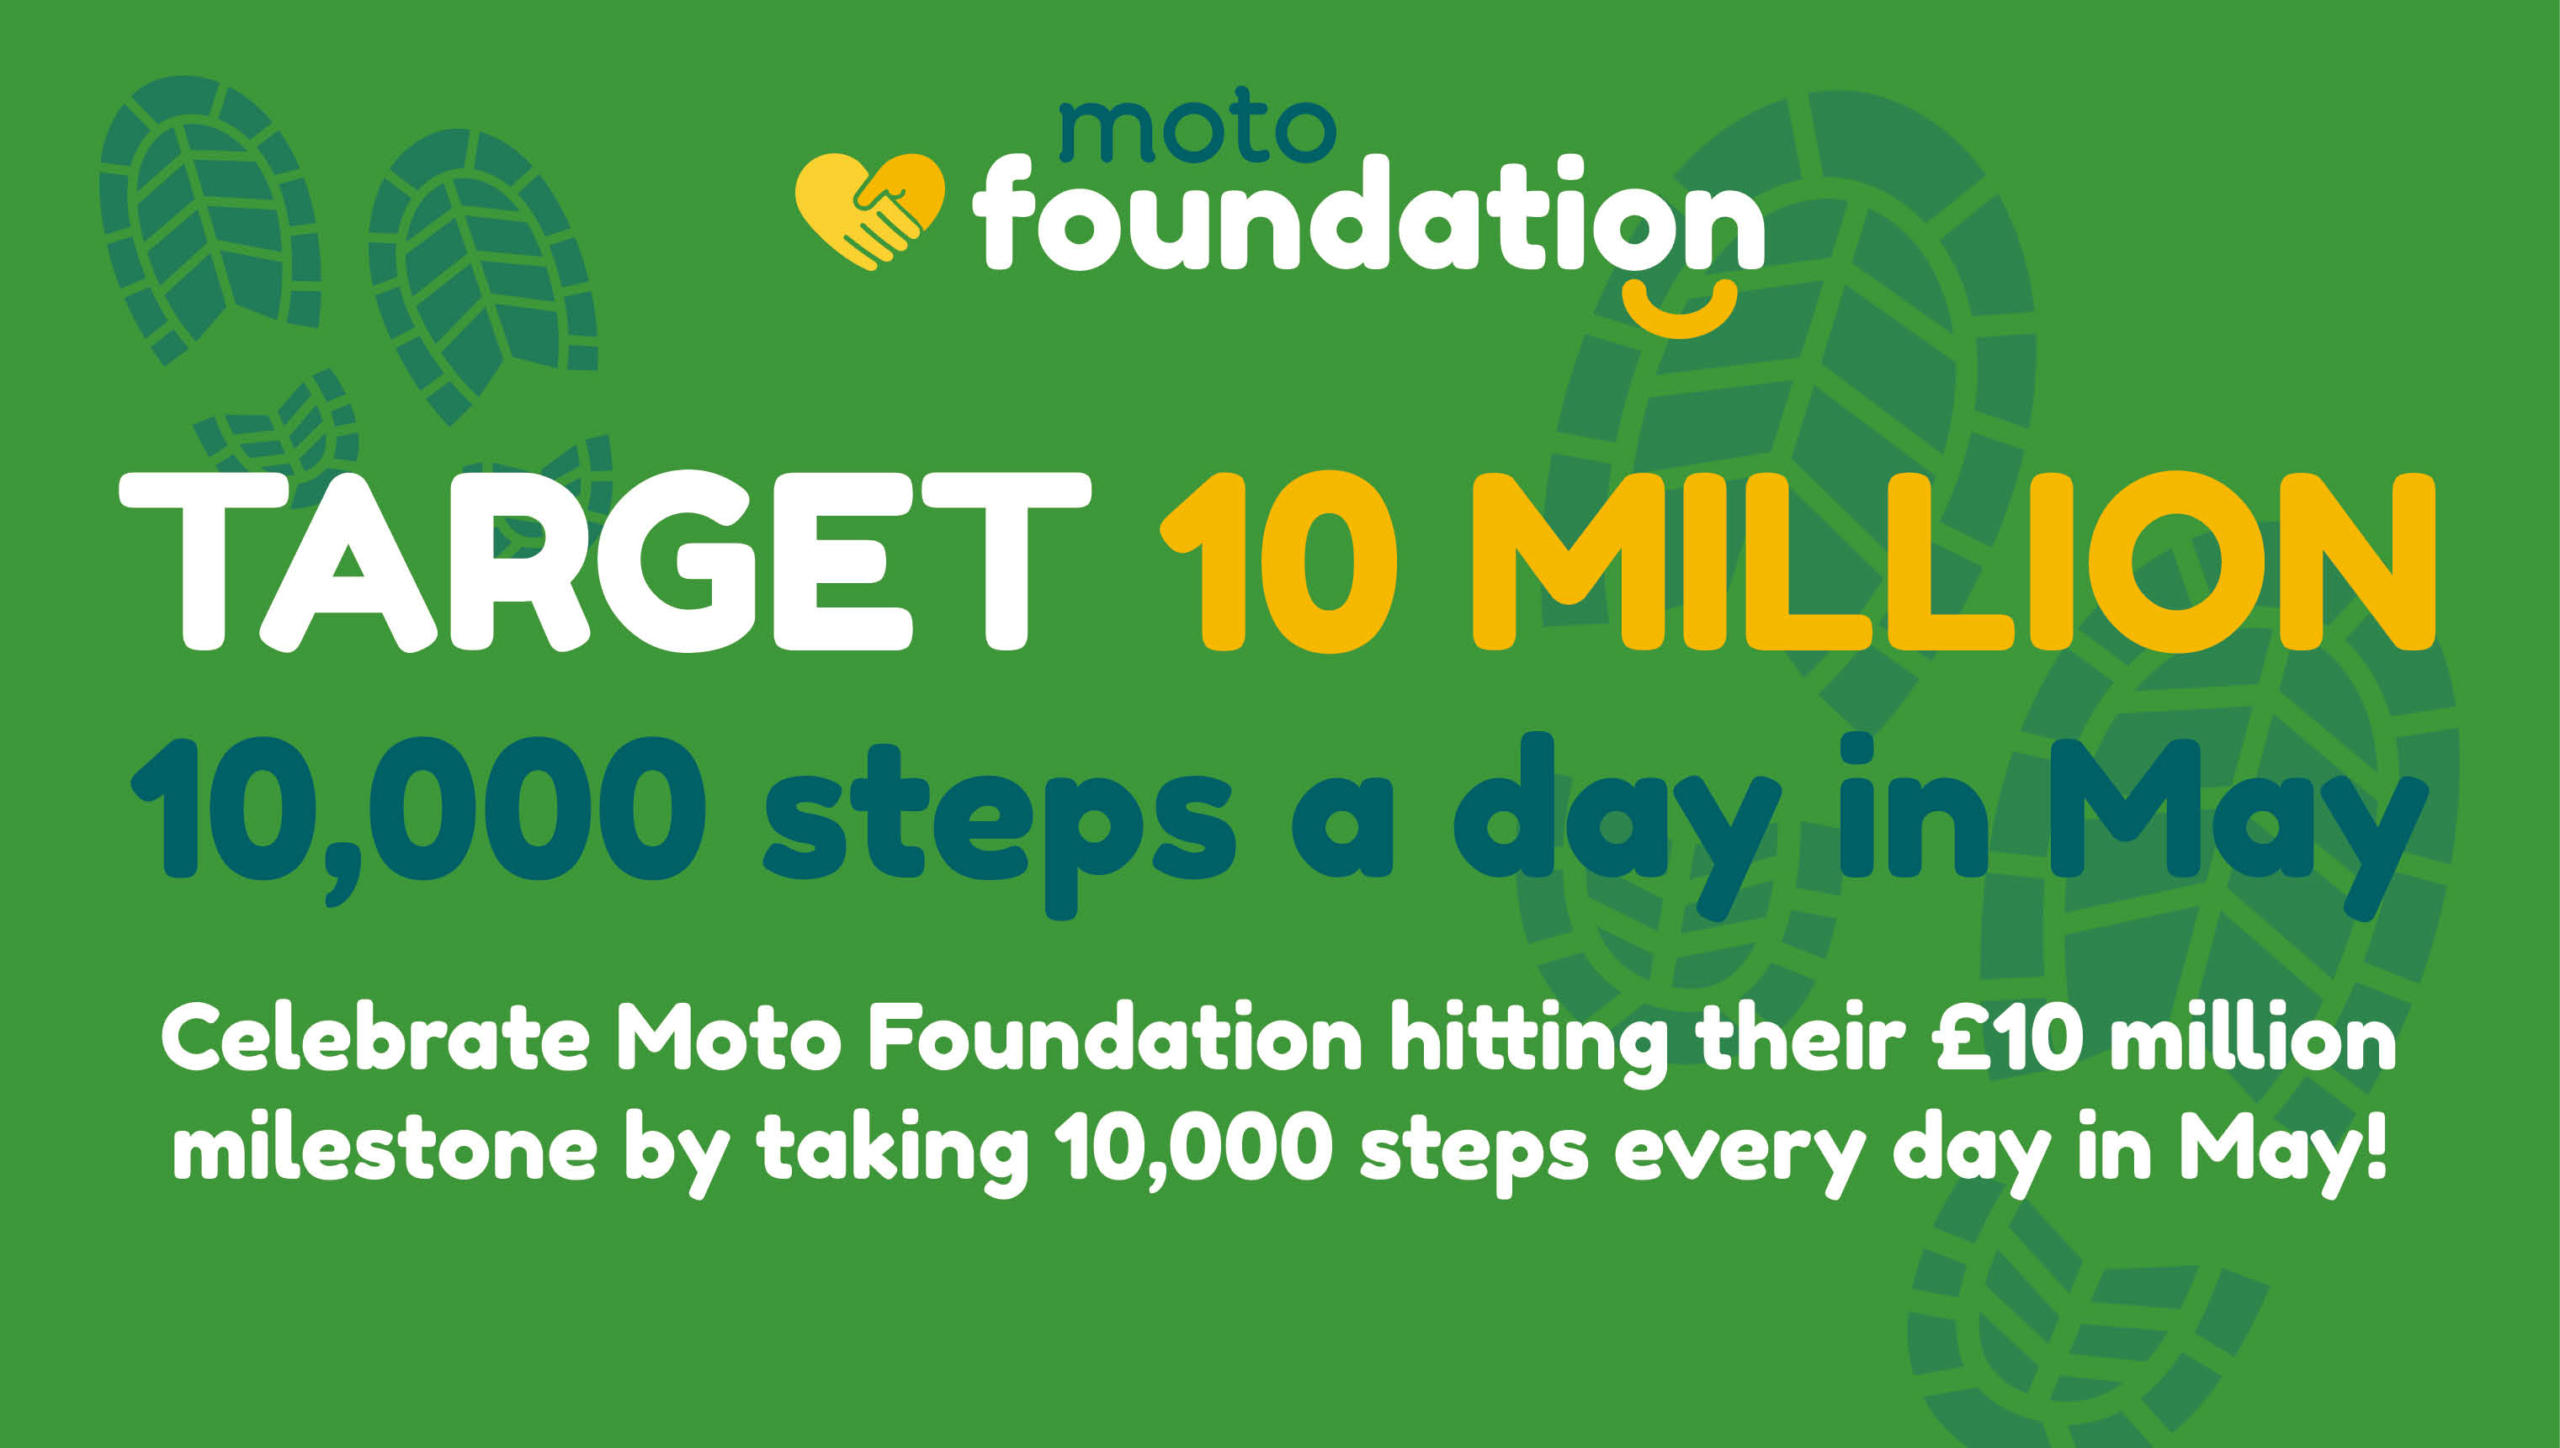 Step-tacular! Celebrating Moto Foundation's £10 million milestone